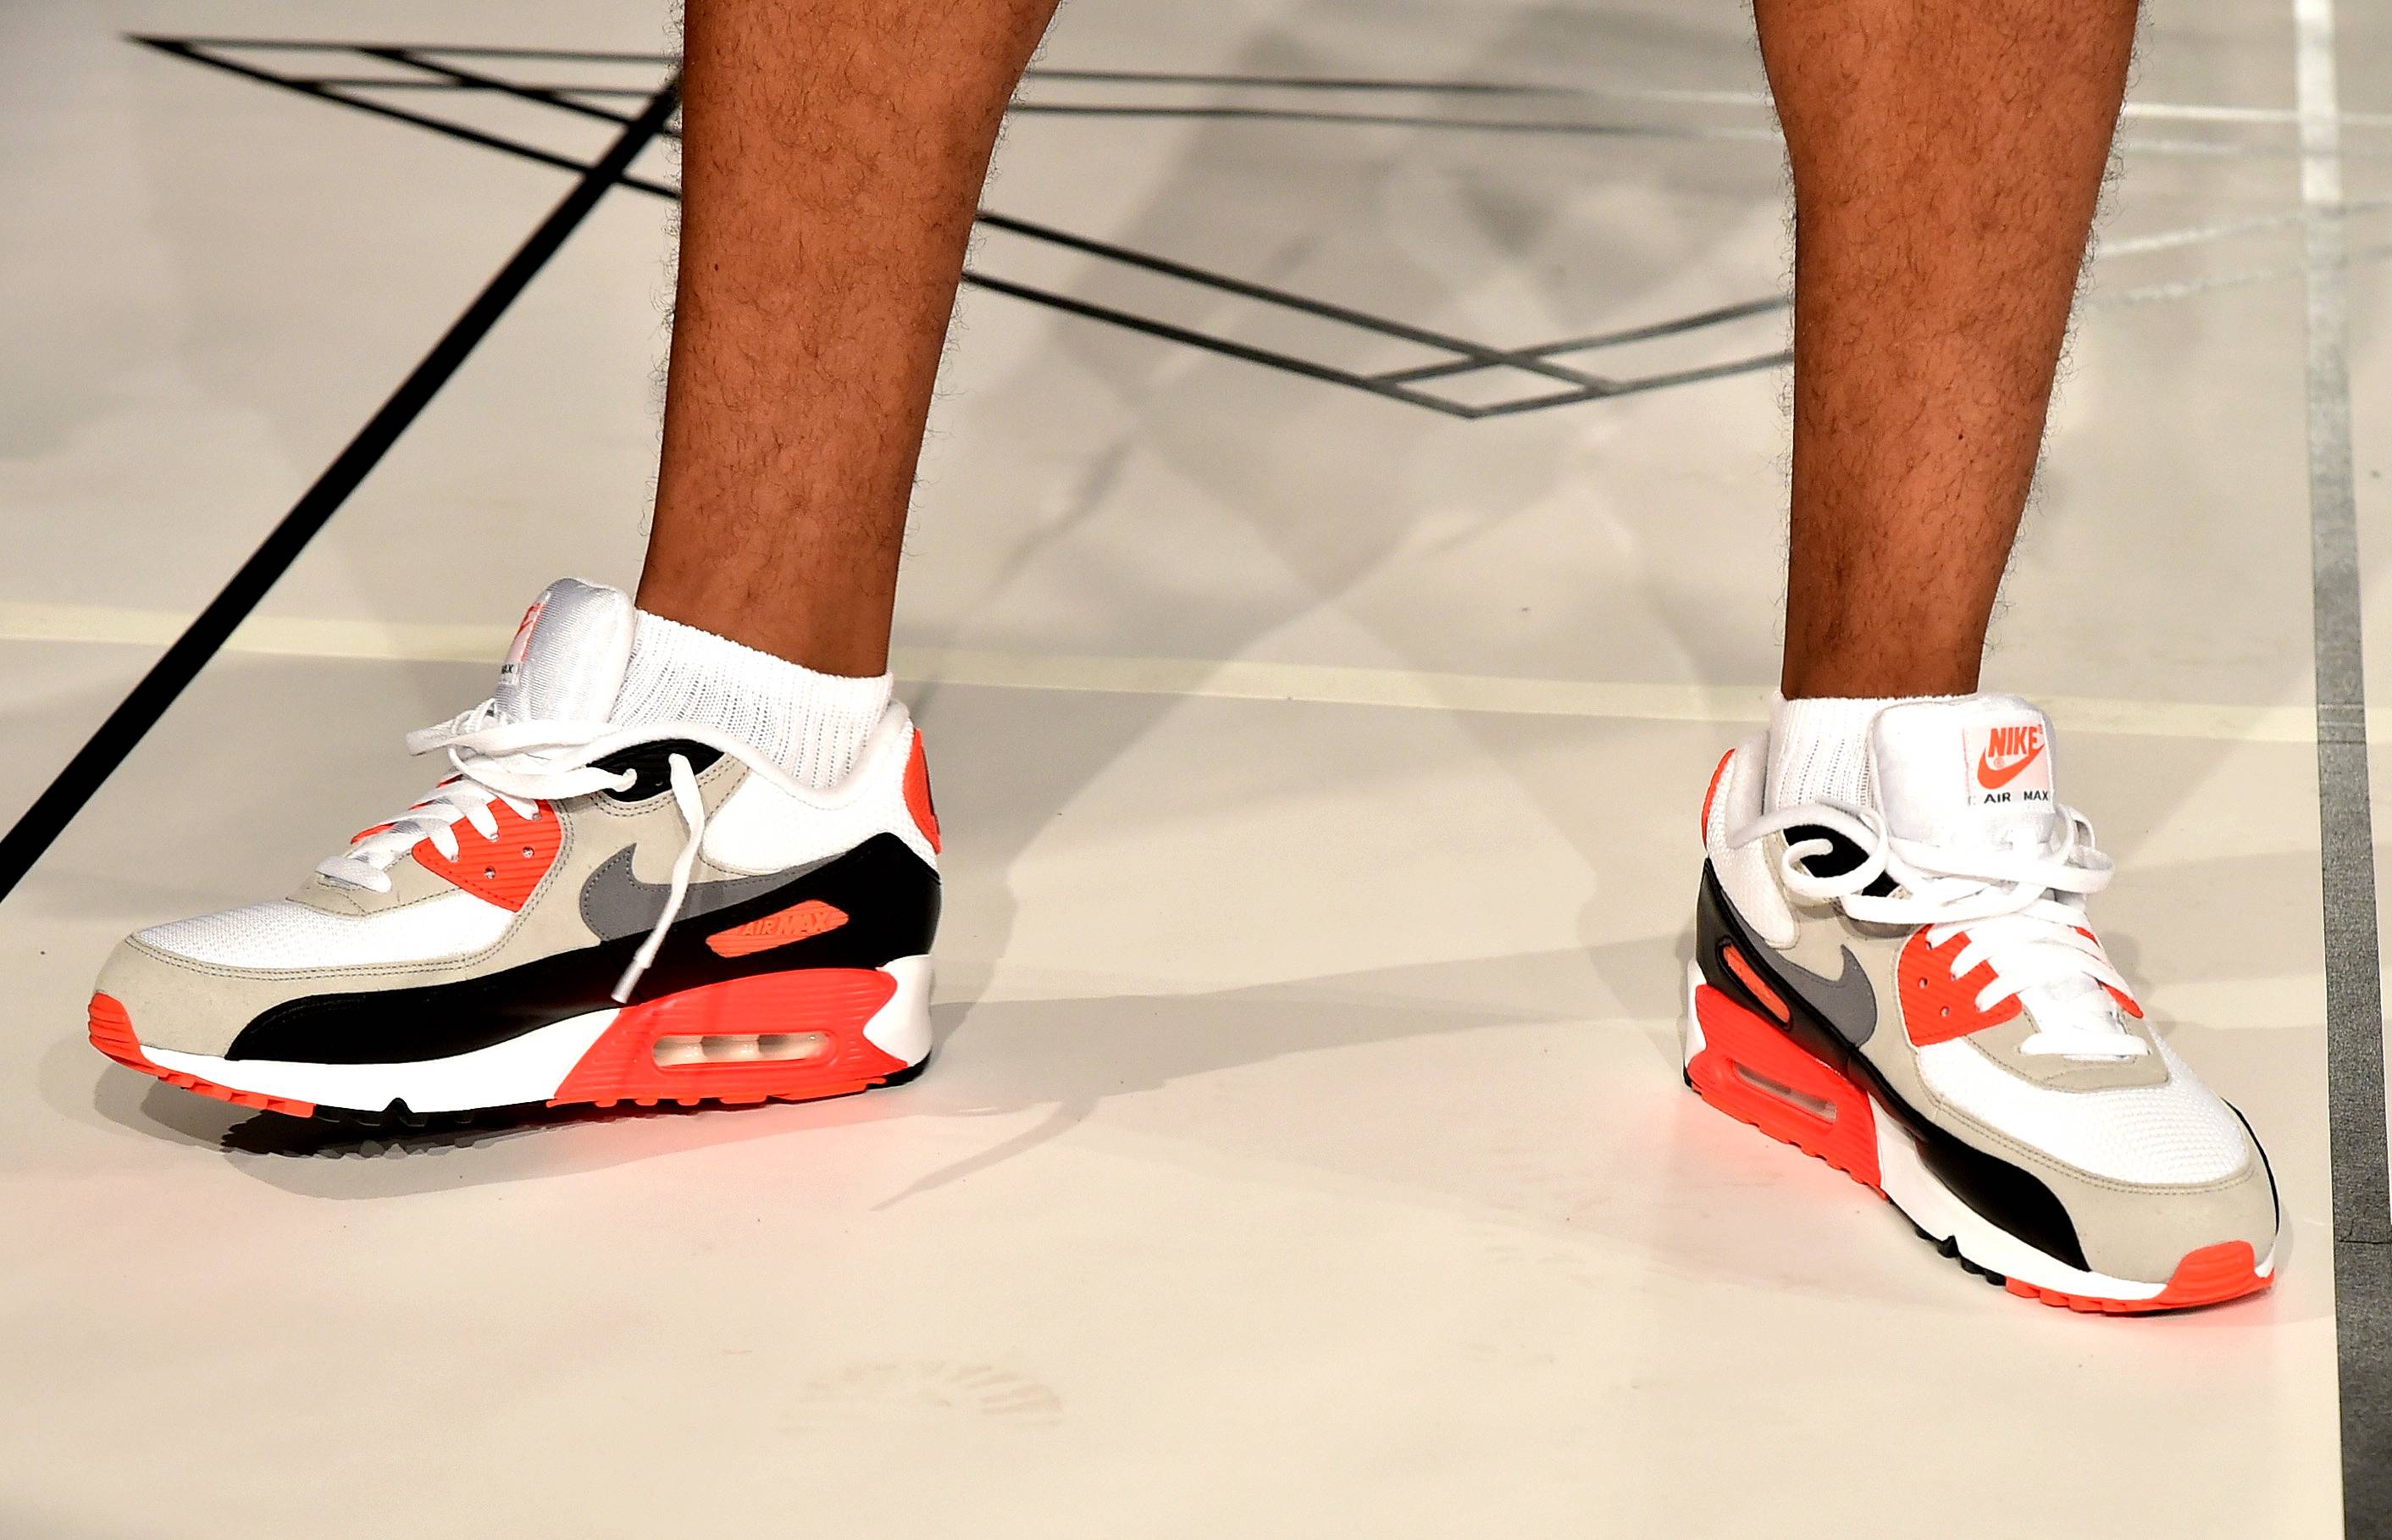 Here's How the Nike Kevin Garnett 3 Retro Looks On-Feet